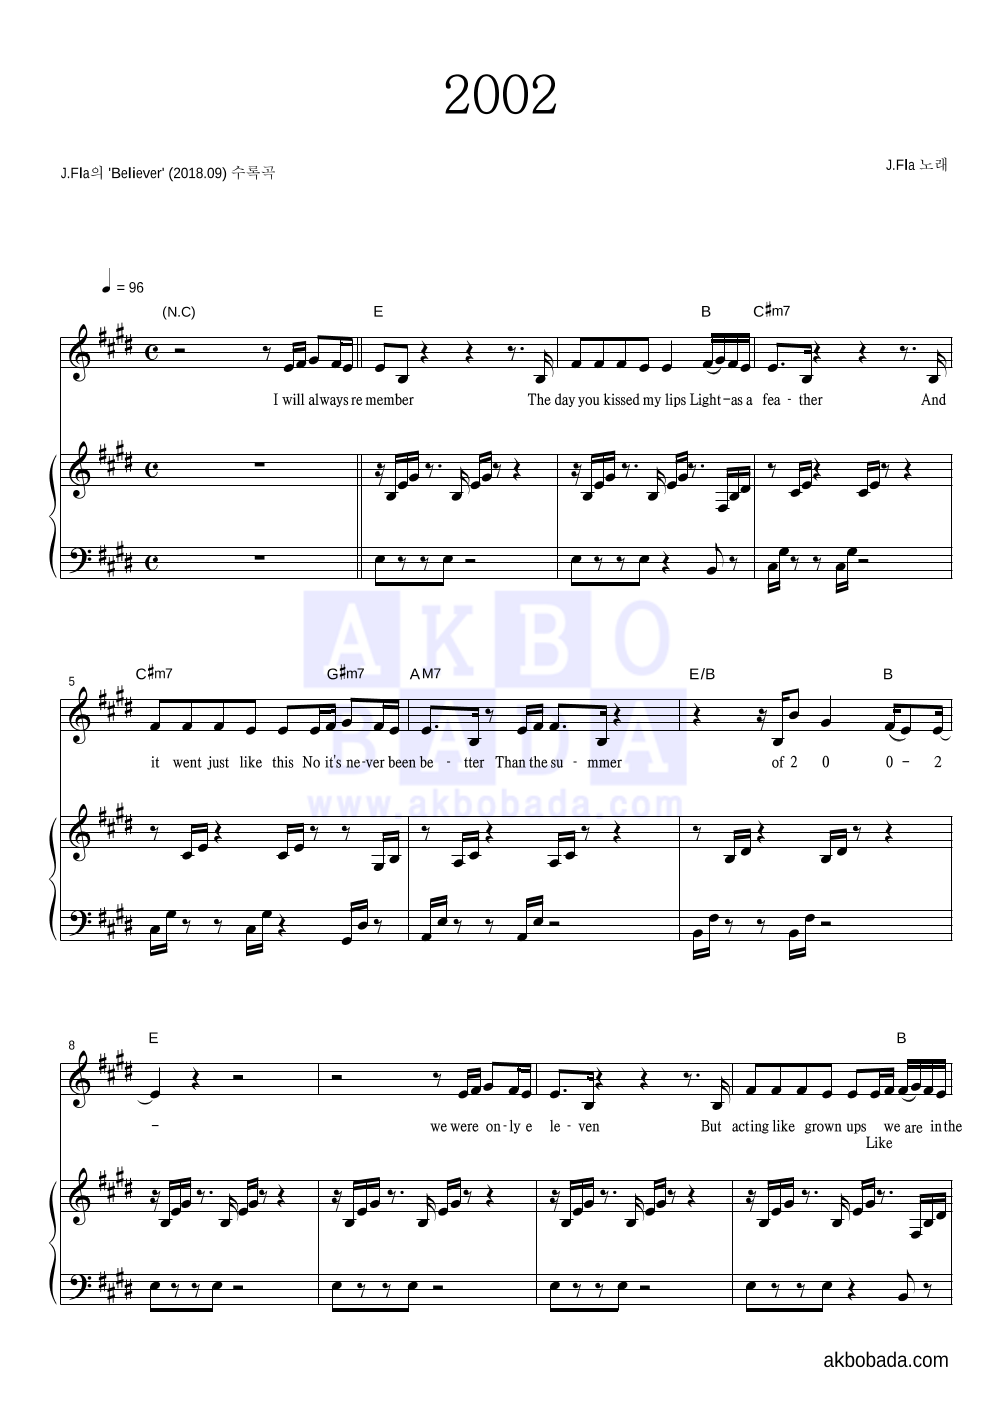 제이플라 - 2002 피아노 3단 악보 